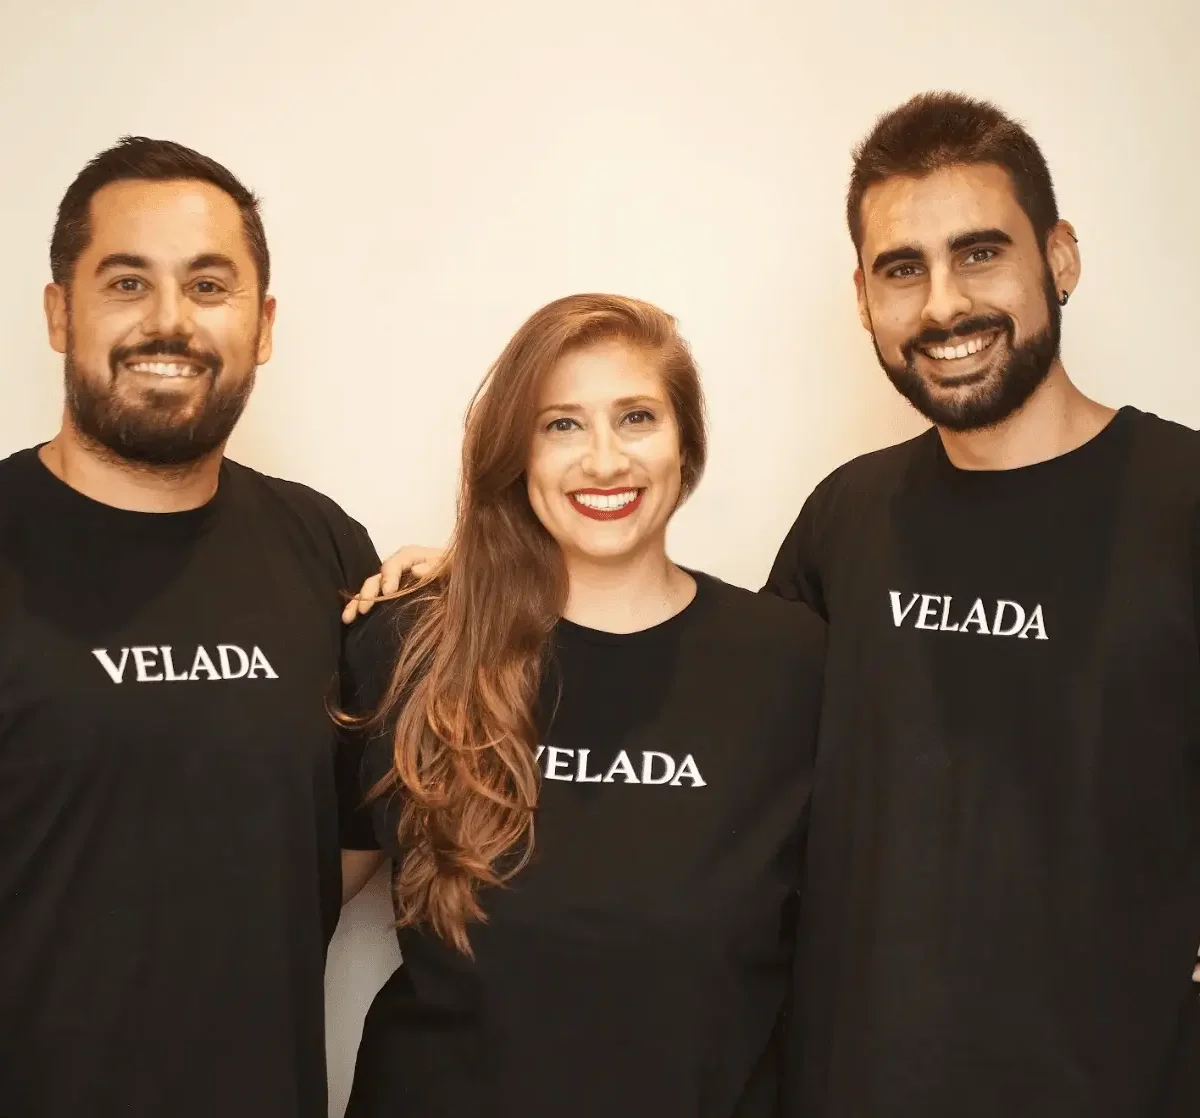 Velada Founders